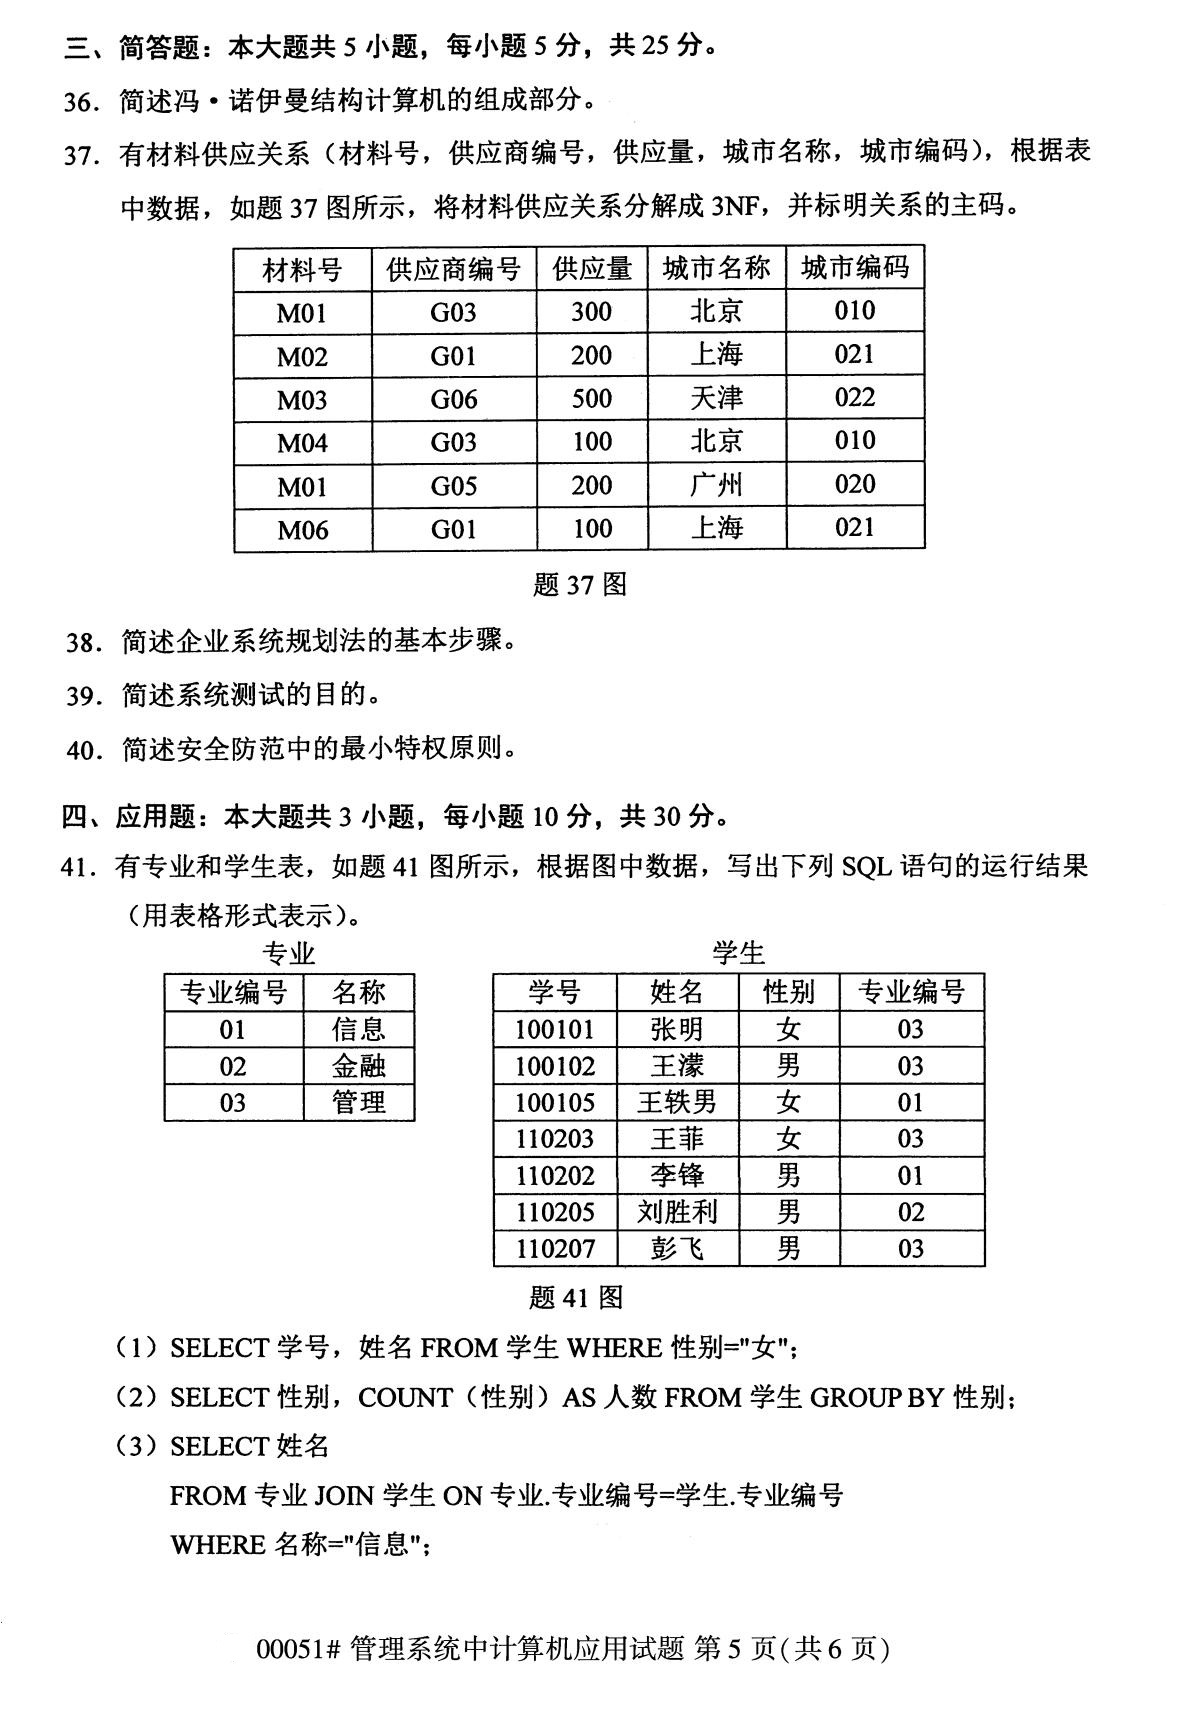 2020年8月辽宁省自学考试本科管理系统中计算机应用真题(图5)